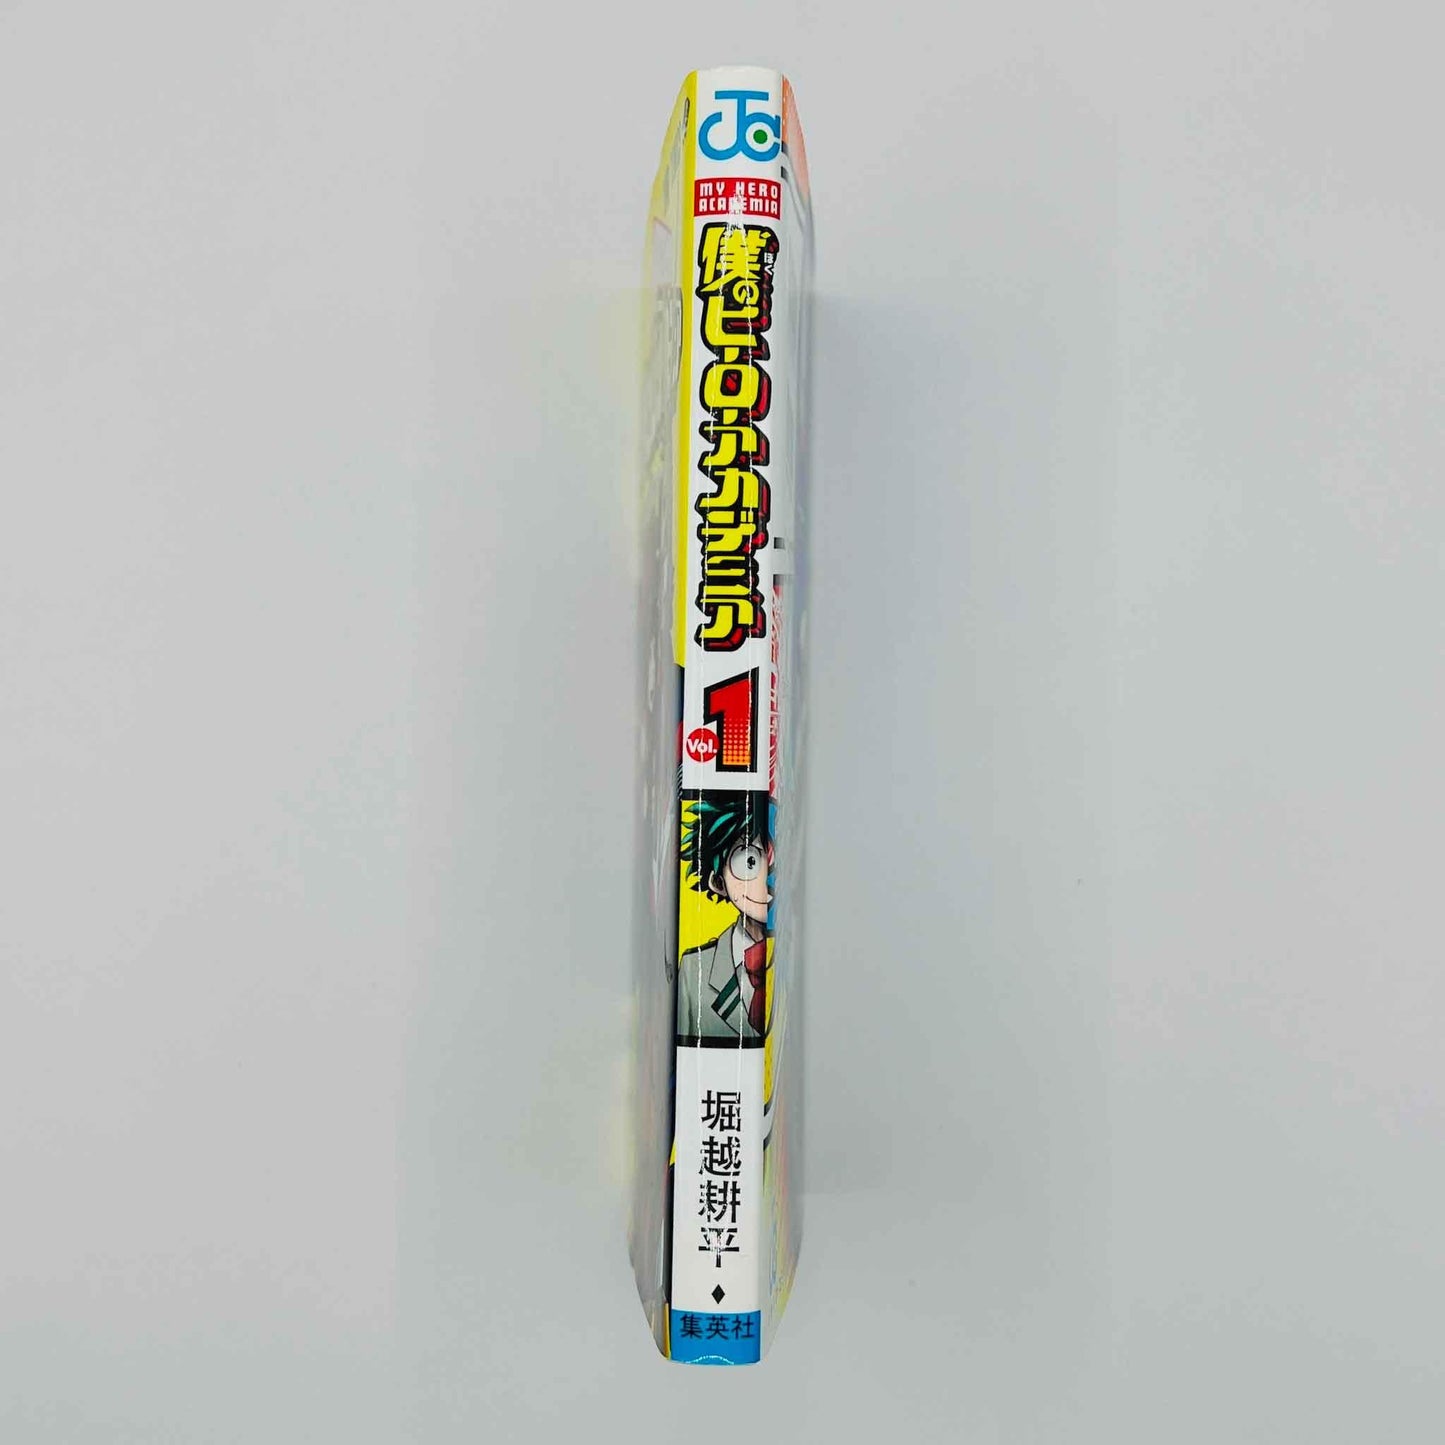 My Hero Academia - Volume 01 - 1stPrint.net - 1st First Print Edition Manga Store - M-MHA-01-007